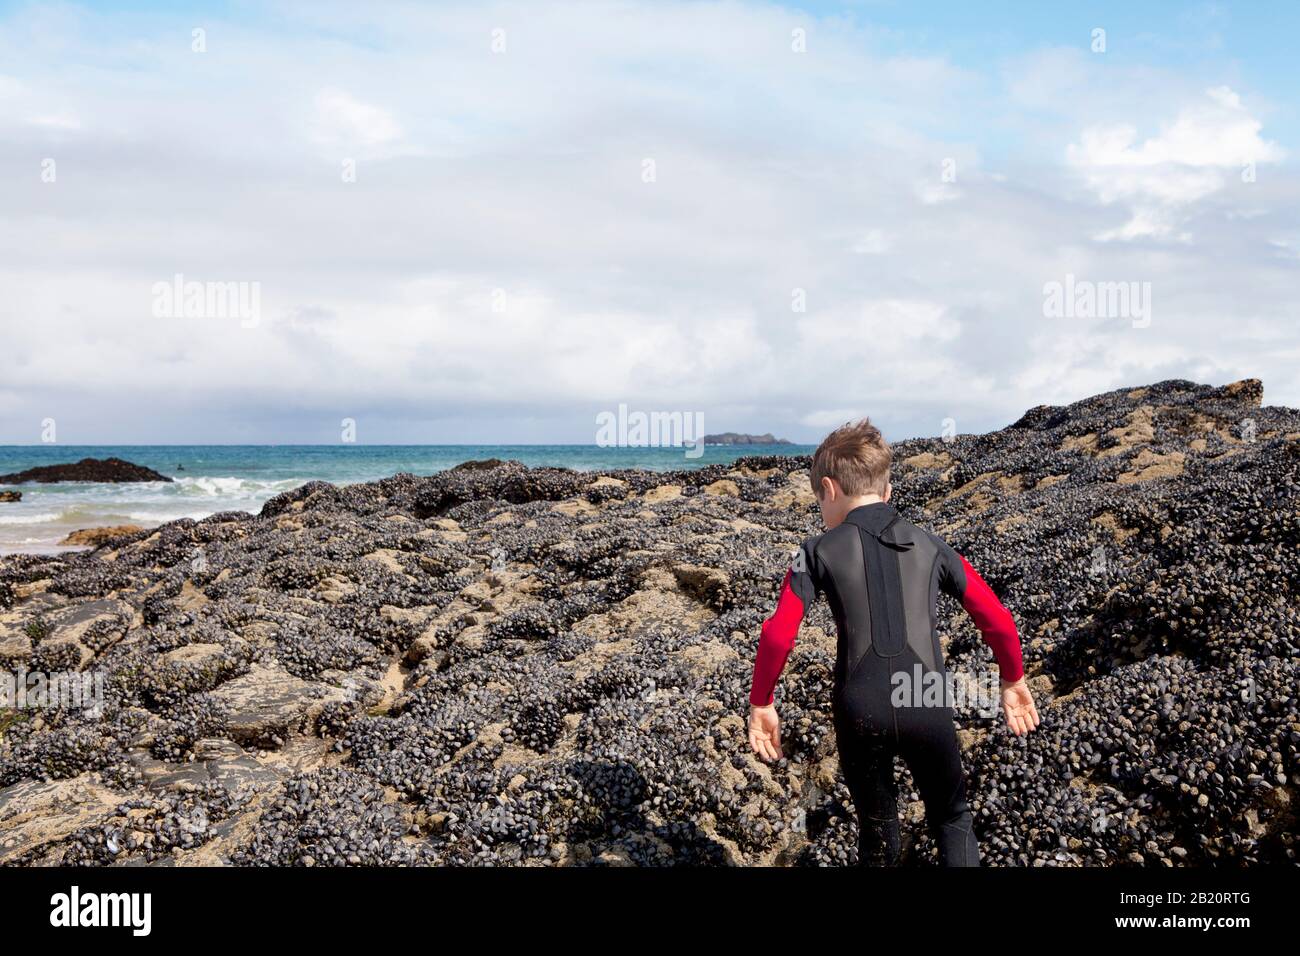 Un niño en traje de neopreno sube a una roca grande expuesta a la marea baja, cubierta de mejillones. Harlyn Bay, North Cornwall, Reino Unido. Foto de stock